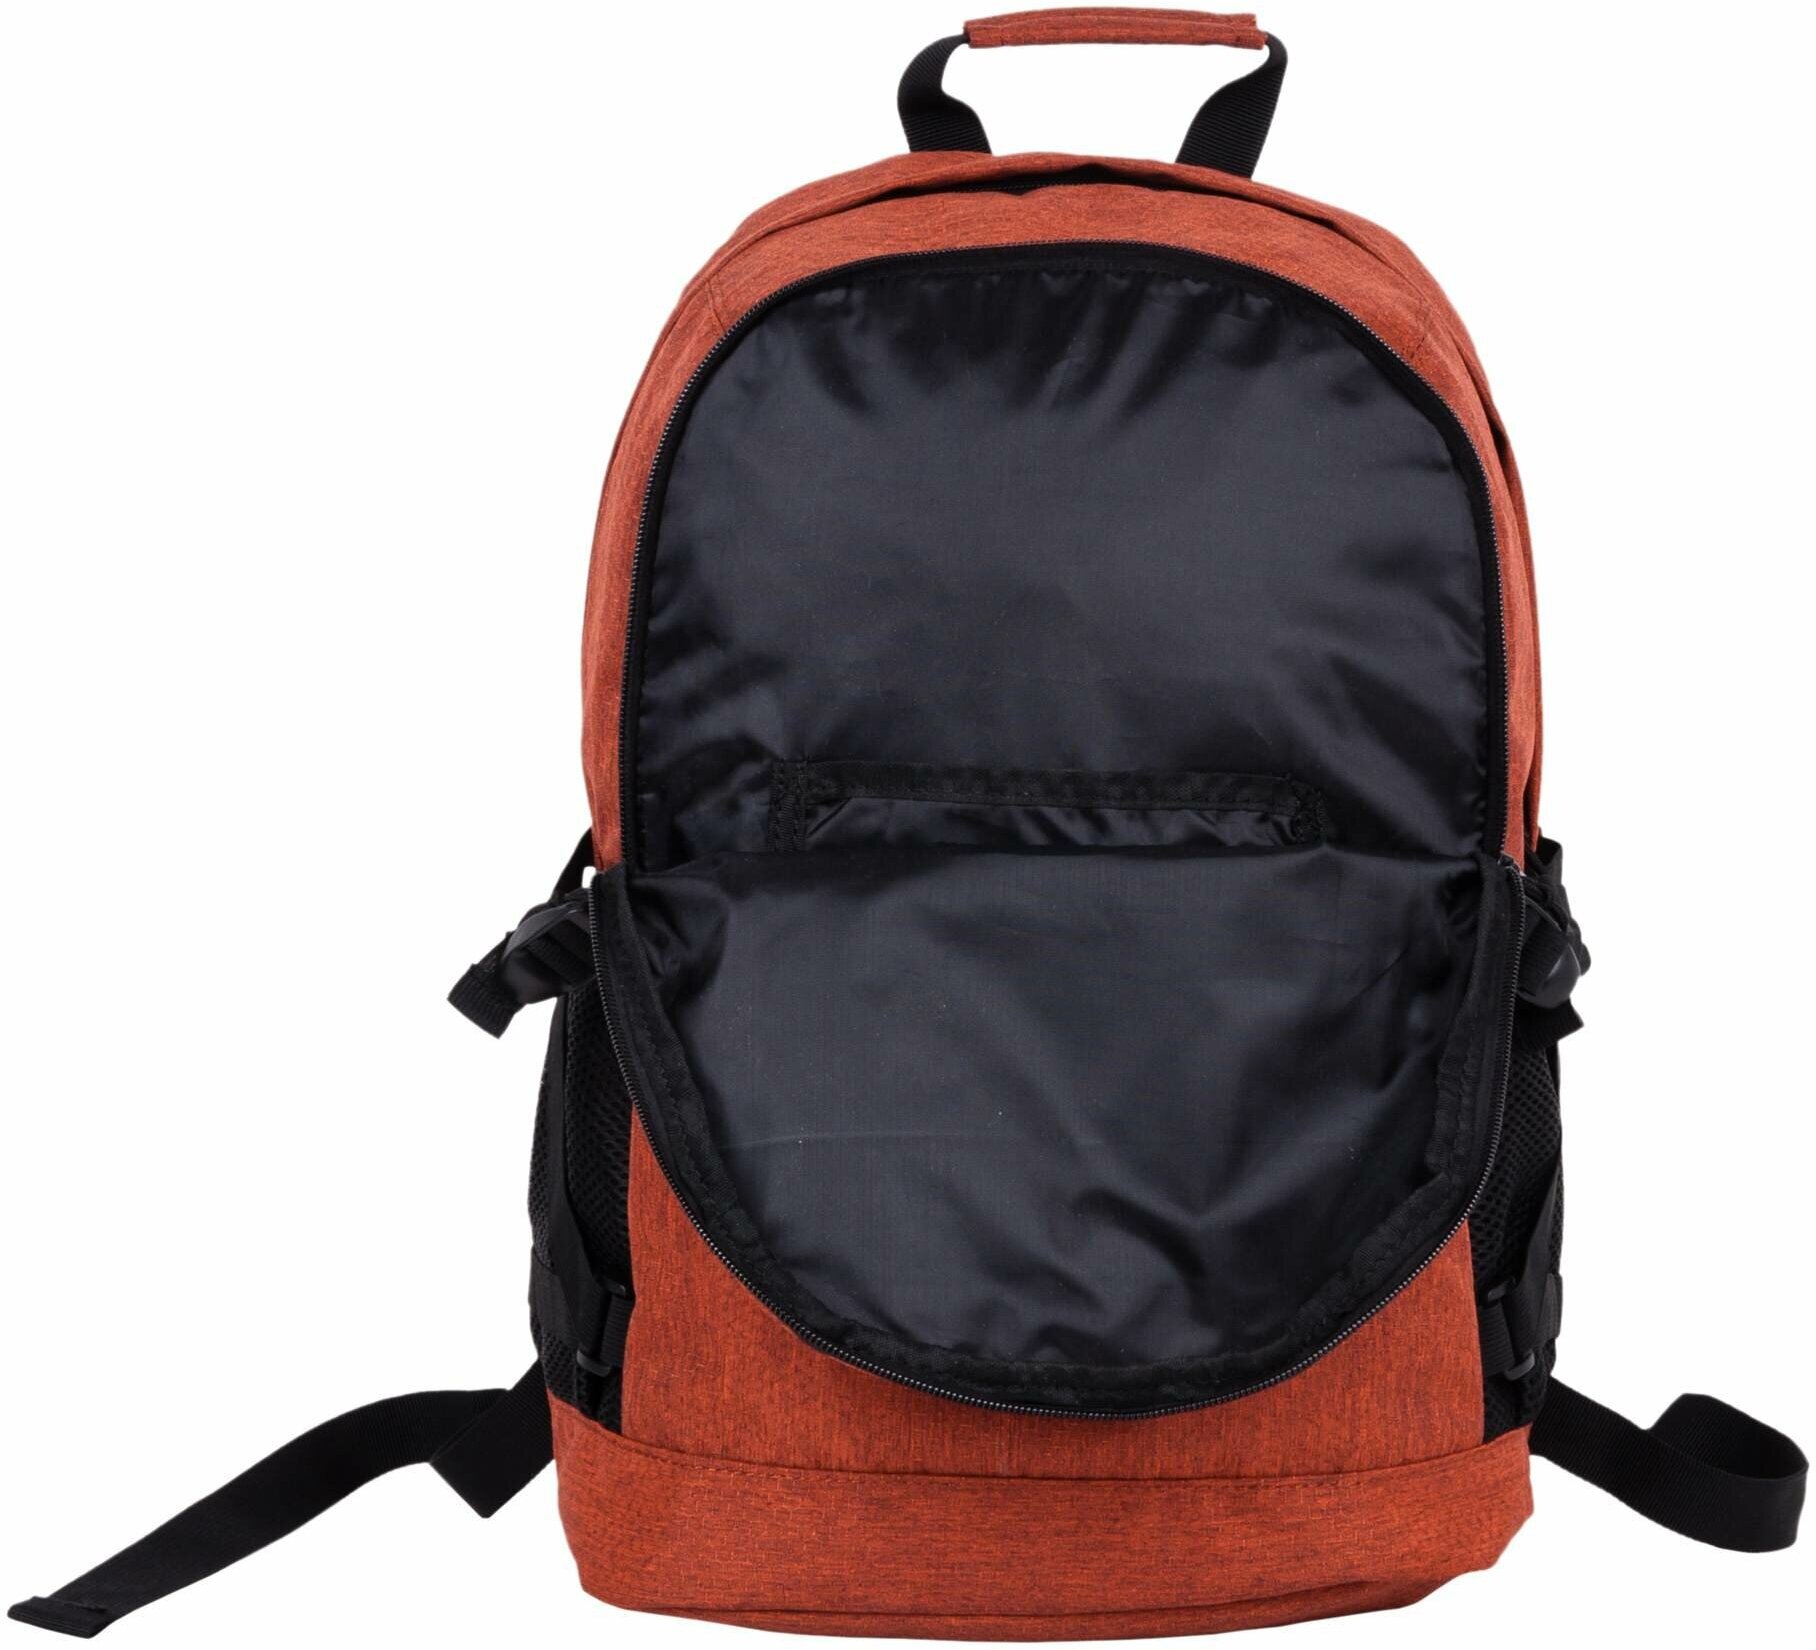 Городской рюкзак POLAR 16015 20.5, оранжевый